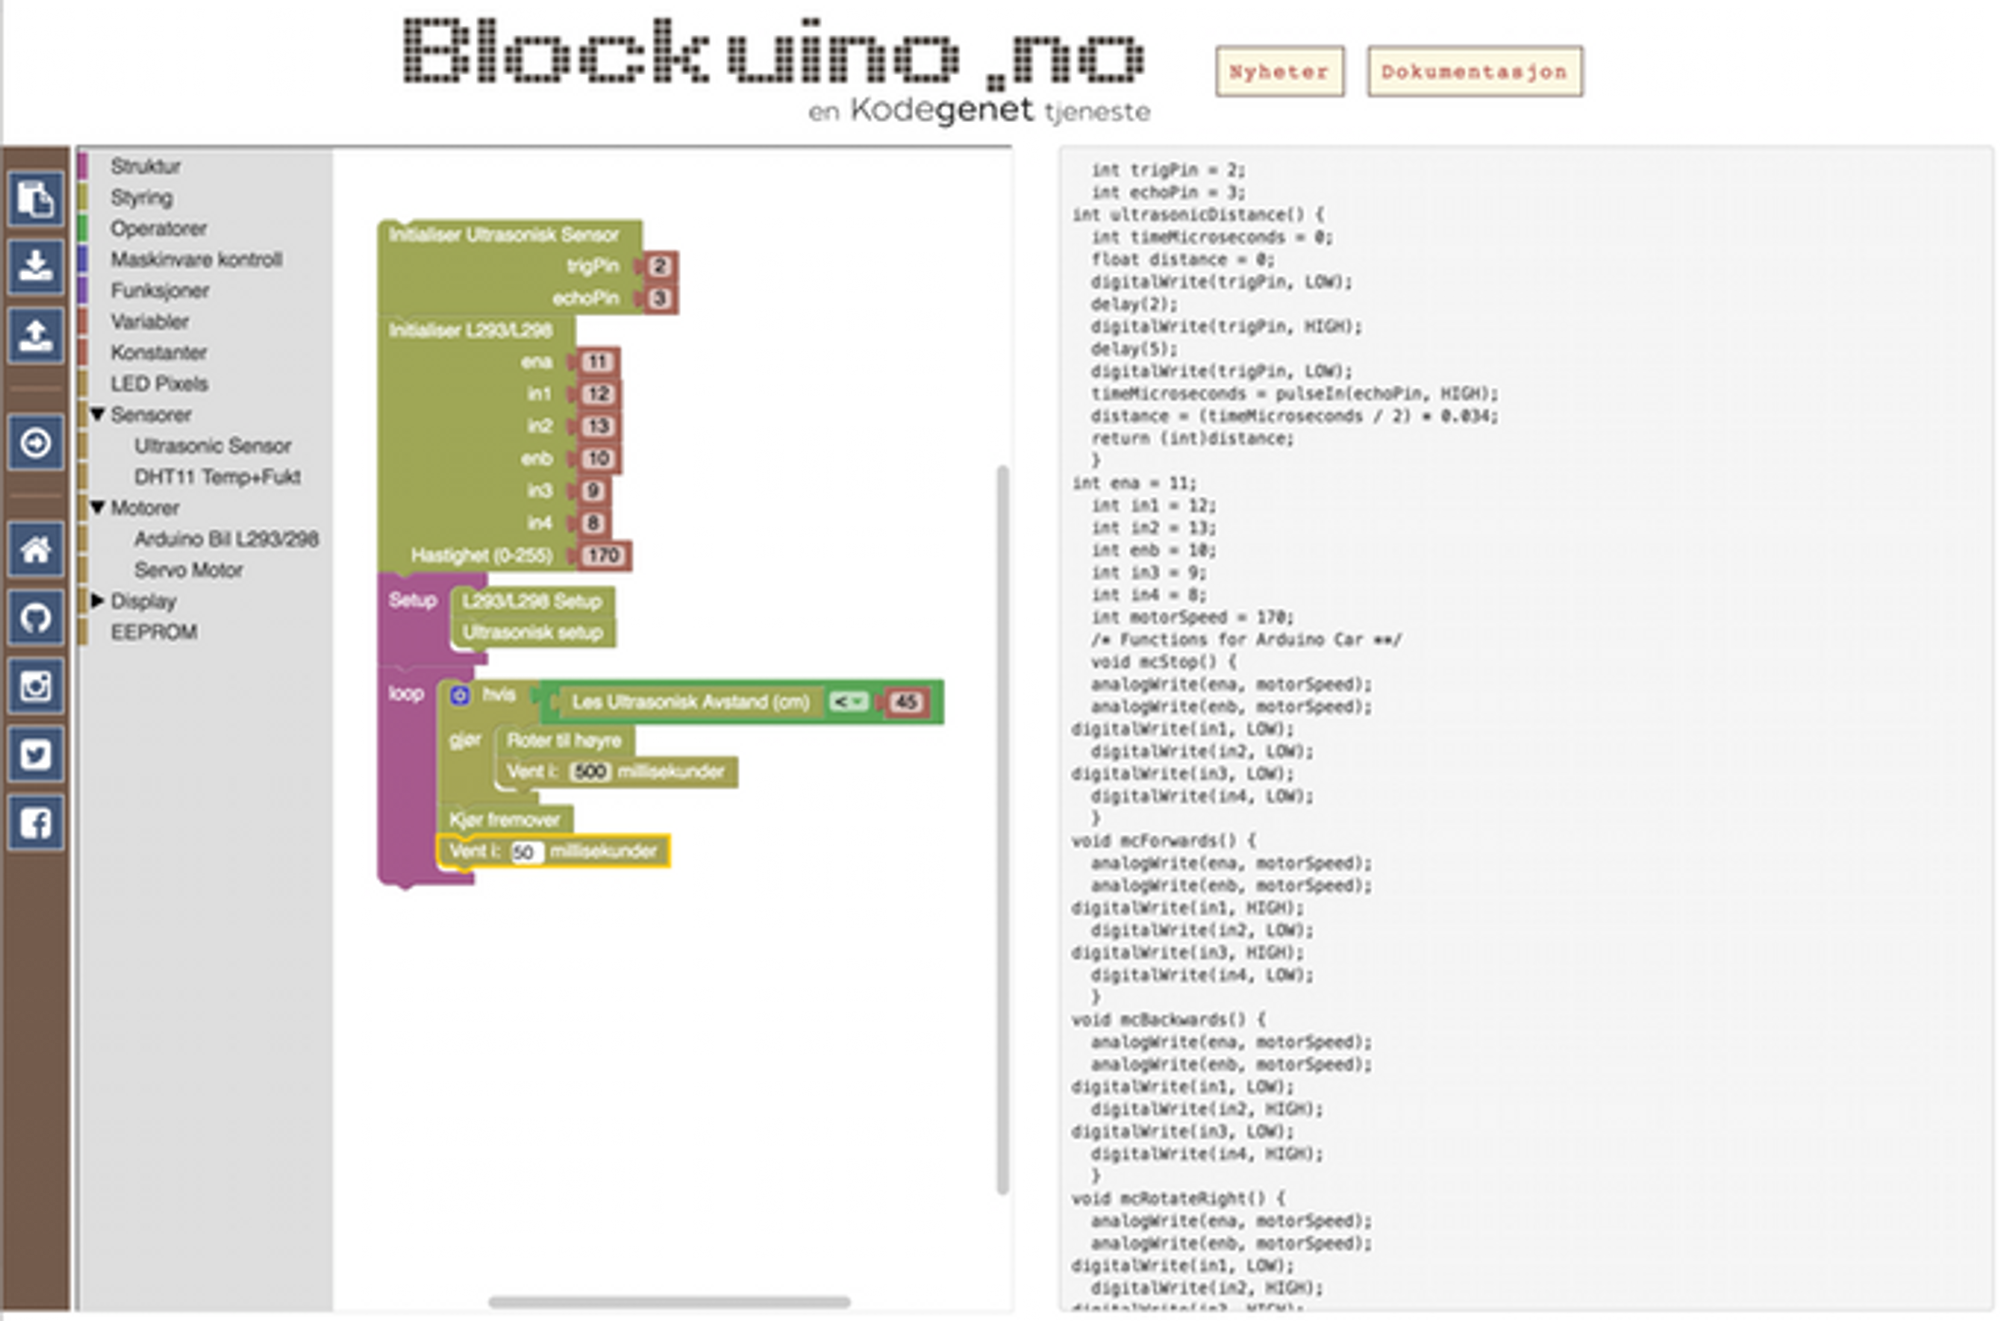 Blockuino gjør arduinoprogrammeringen enkelt for nybegynnere, mener Teknolab som har basert hele prosjektet på åpen kildekode.